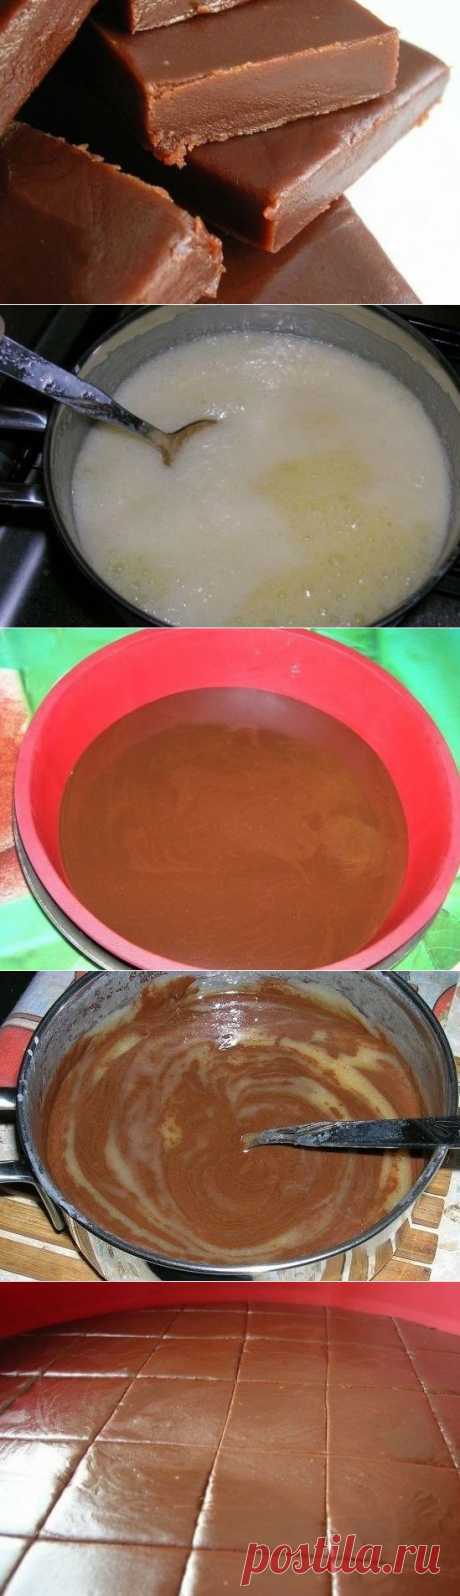 Как приготовить домашний ирис с шоколадом - рецепт, ингридиенты и фотографии